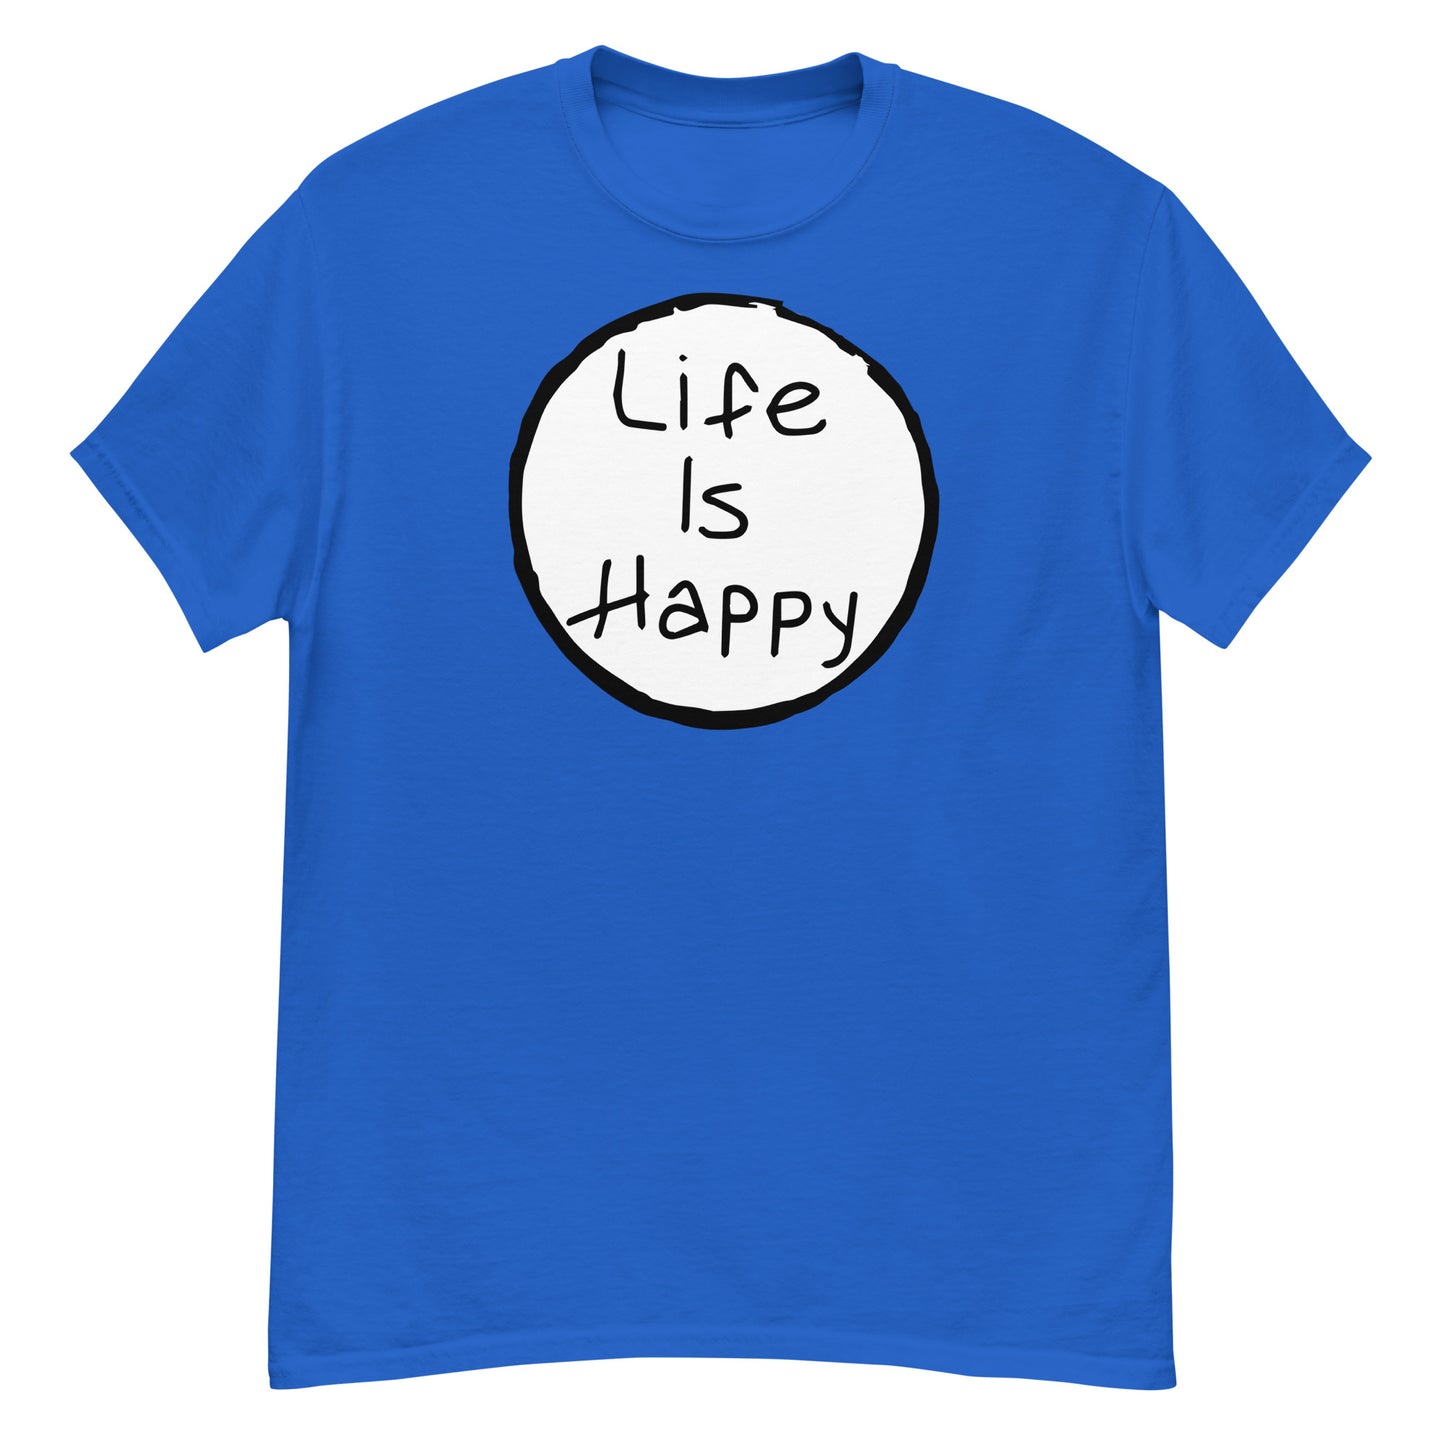 Life is Happy classic tee